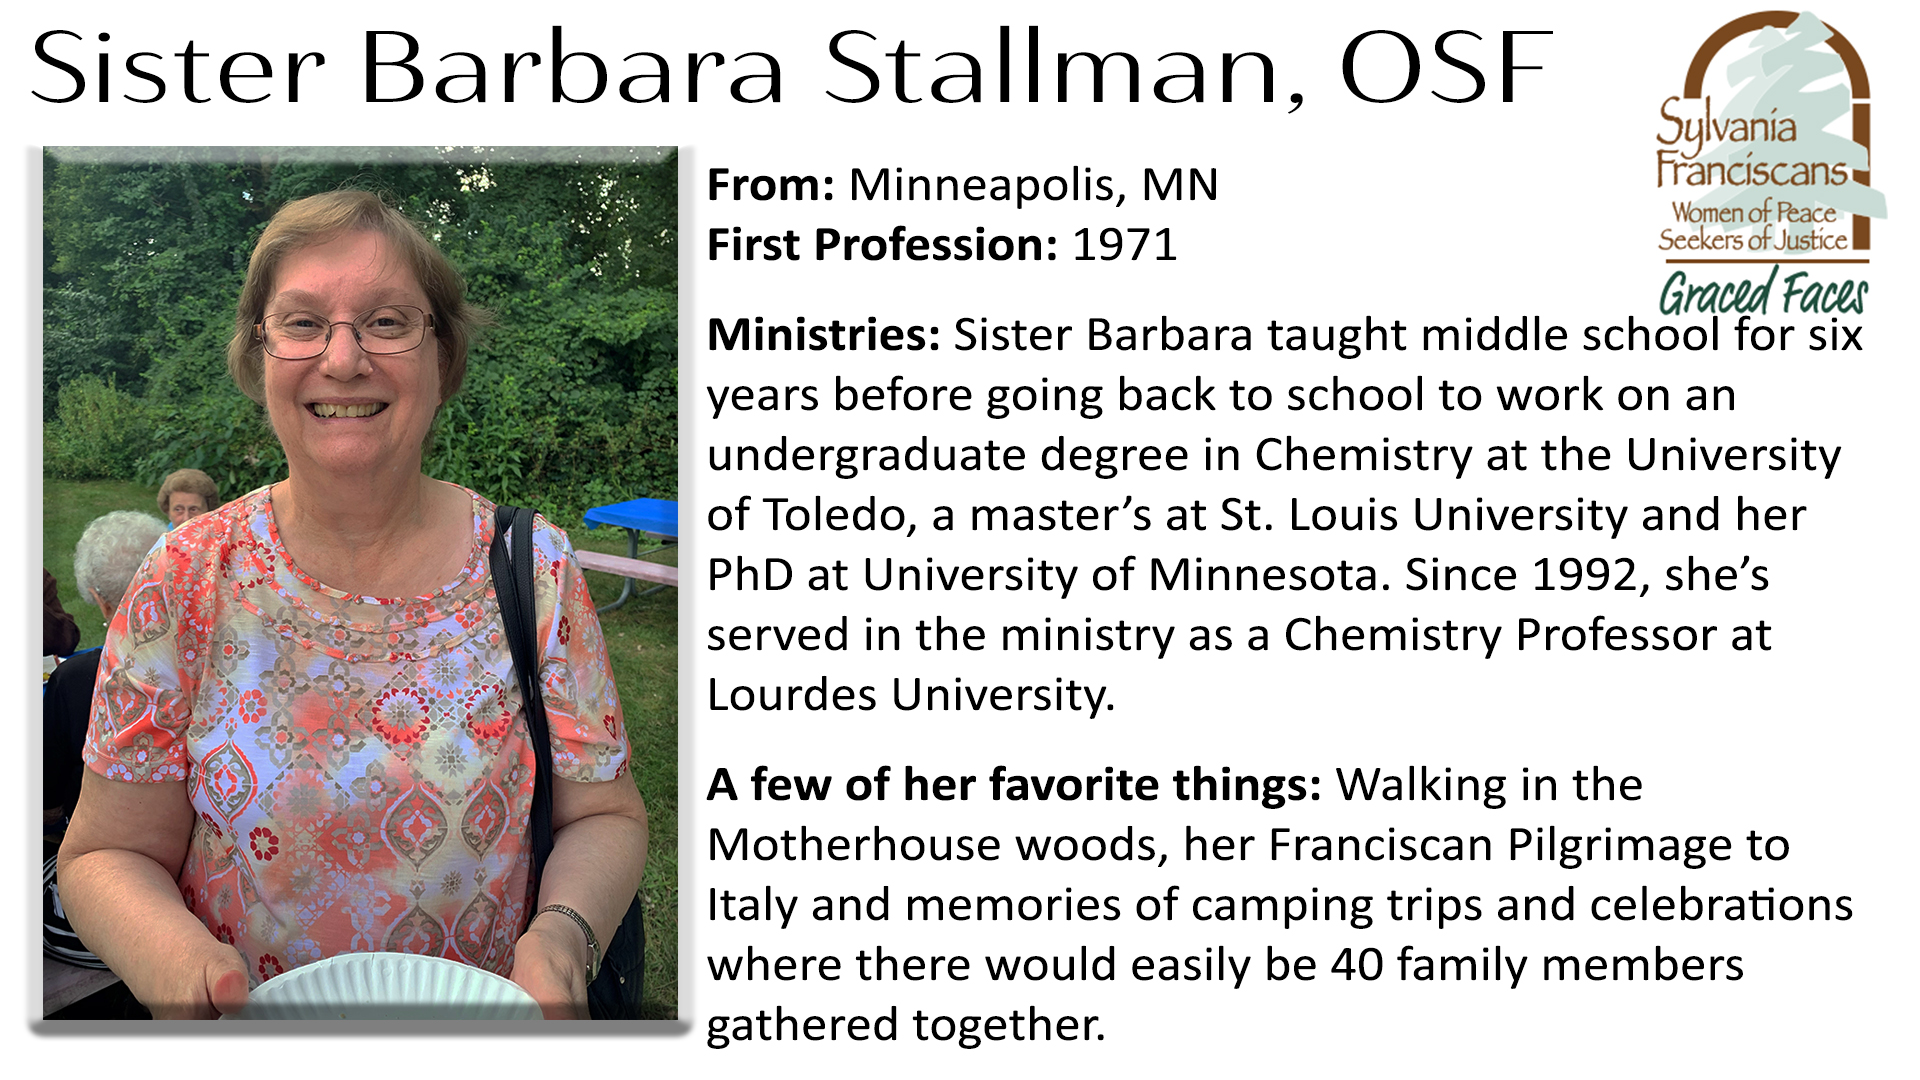 Sister Barbara Stallman Graced Faces OSF